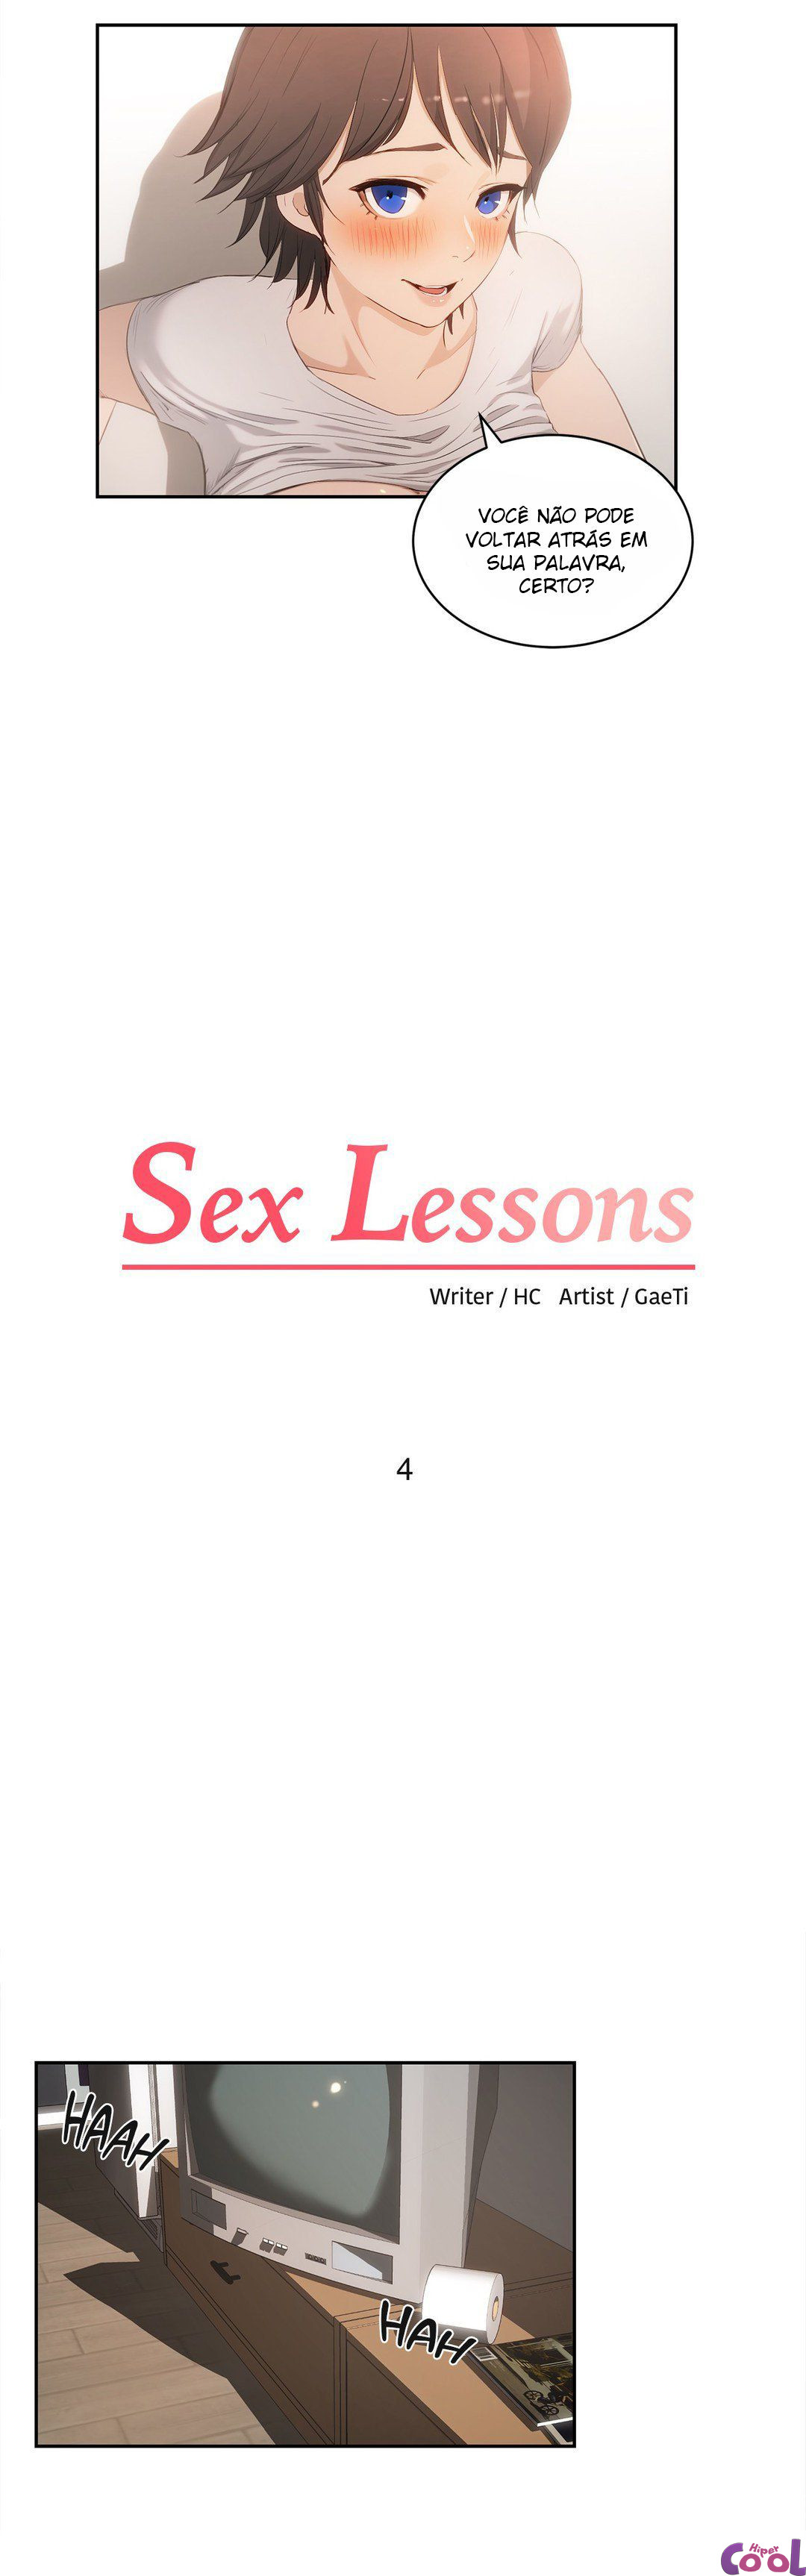 Me ensinar fazer sexo 04 - Foto 2